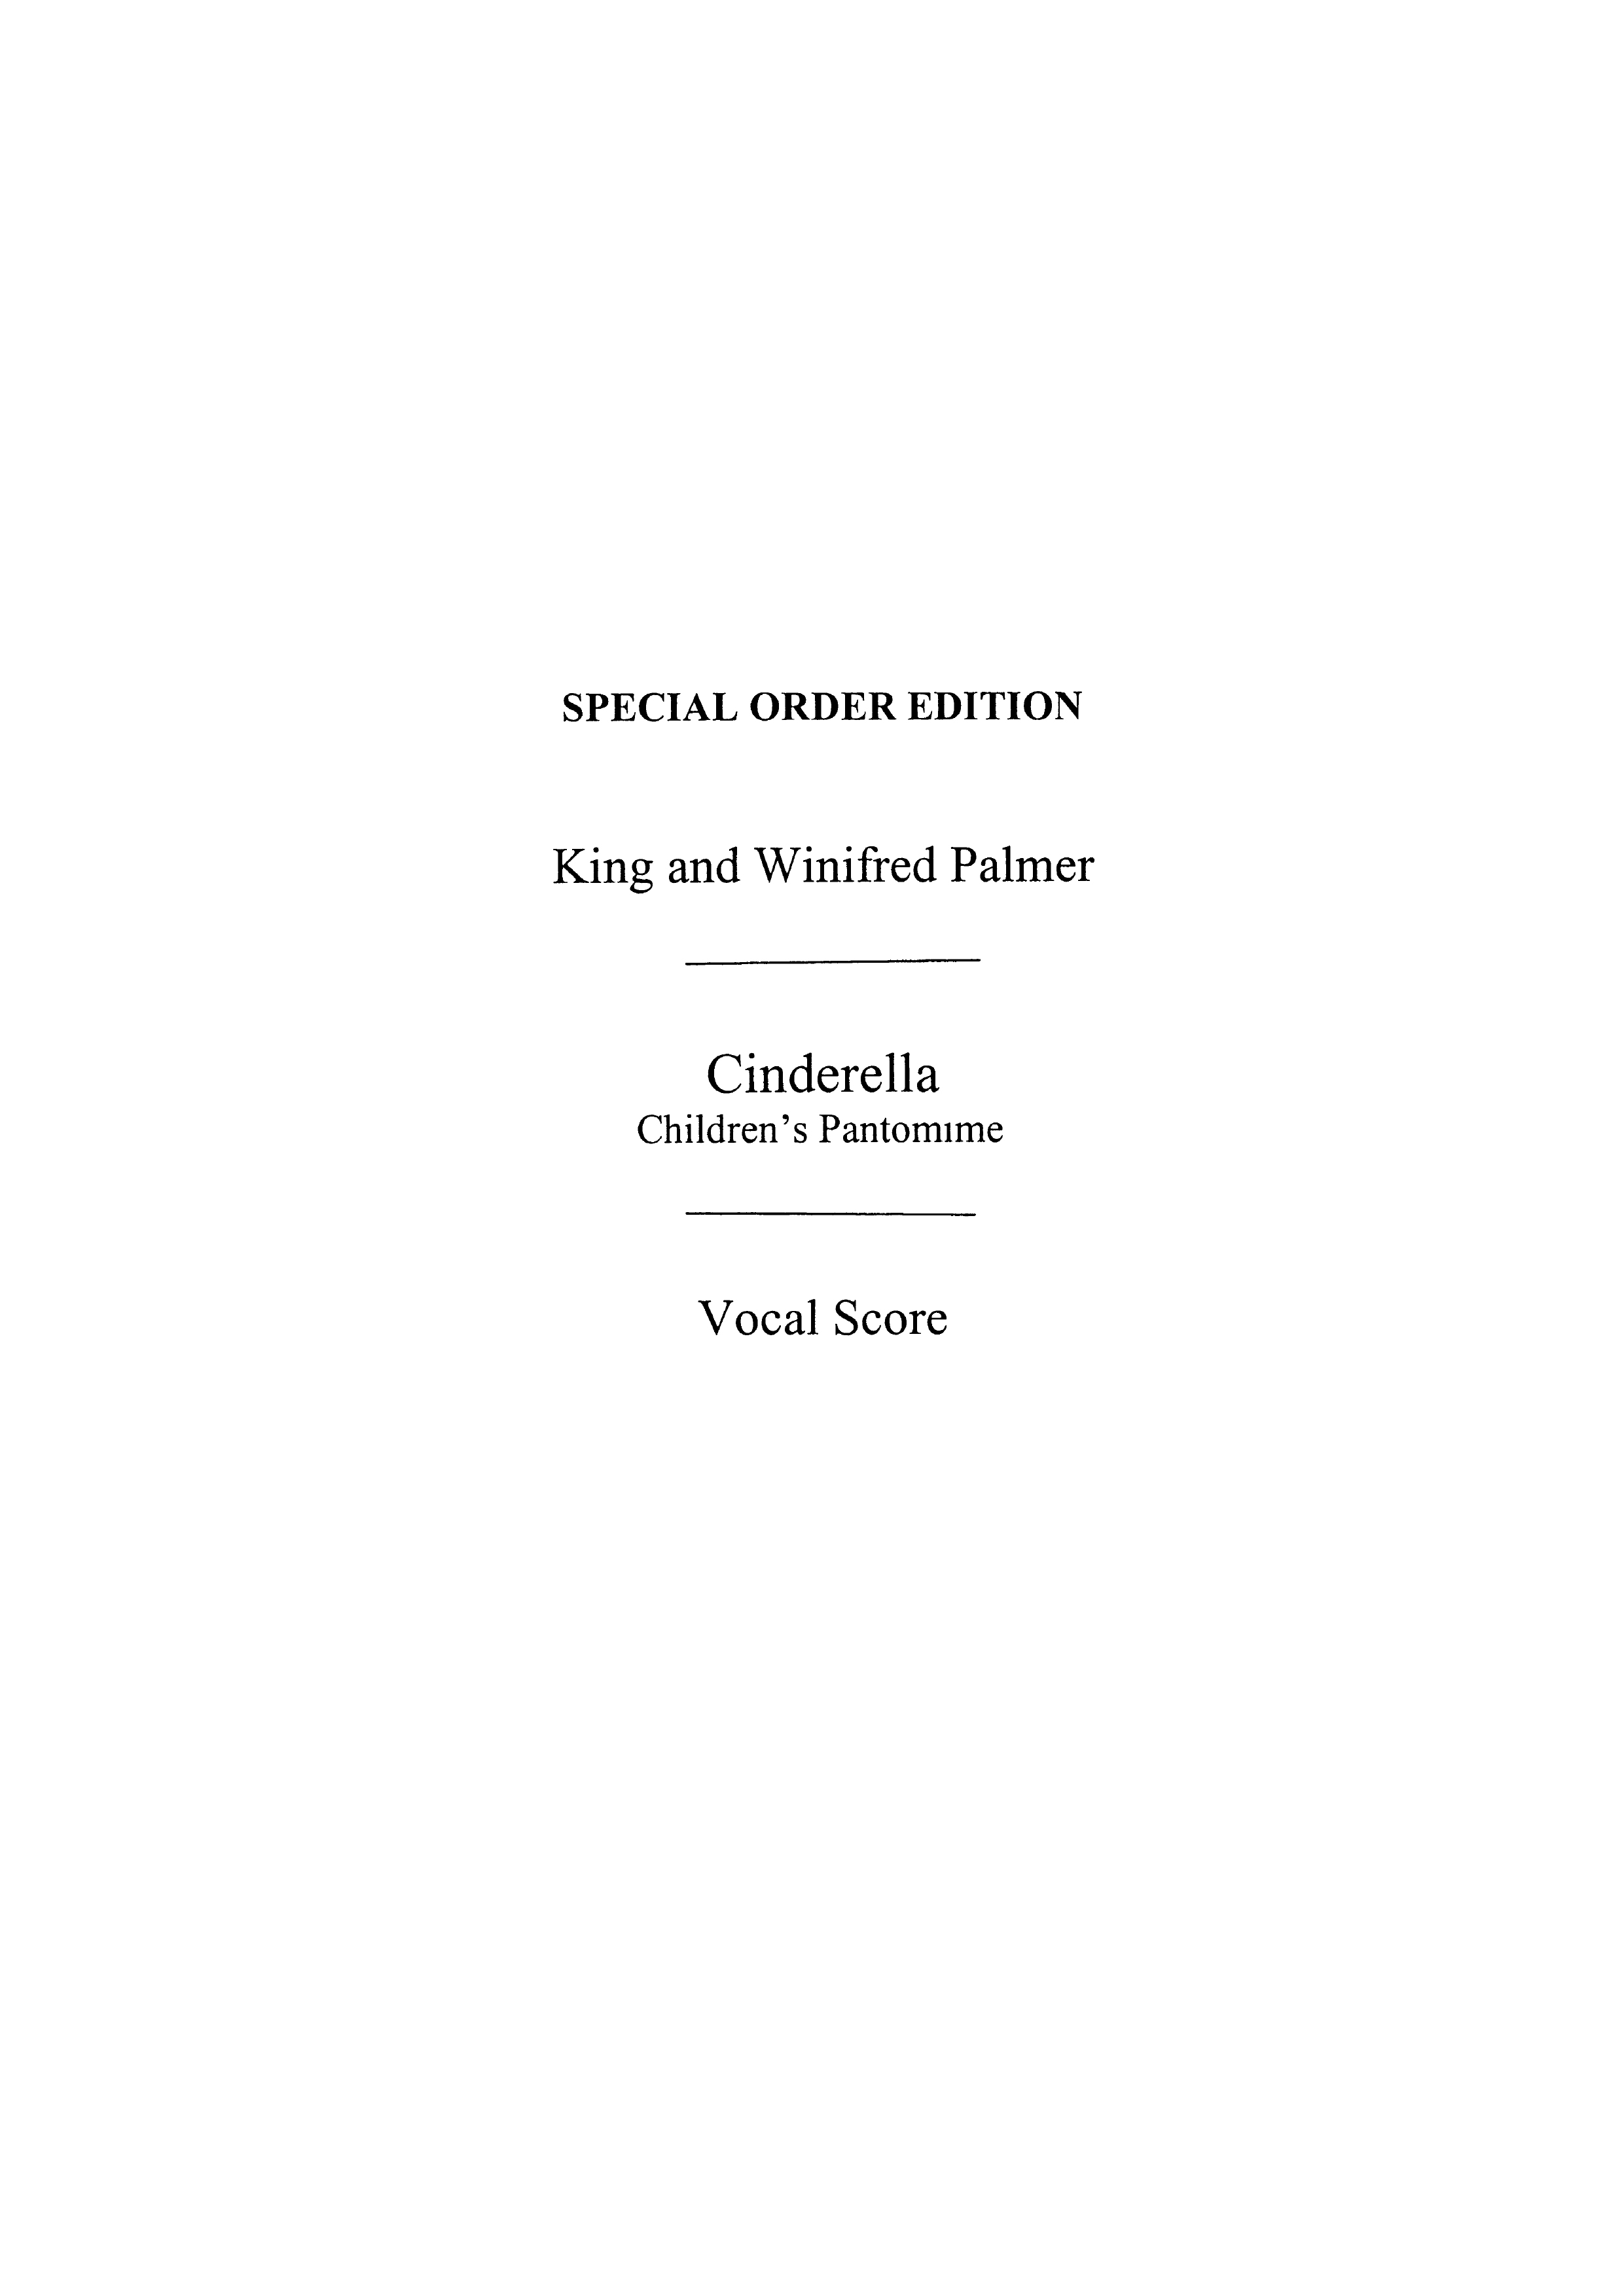 W. Palmer: Palmer Cinderella Vs: Voice: Vocal Score